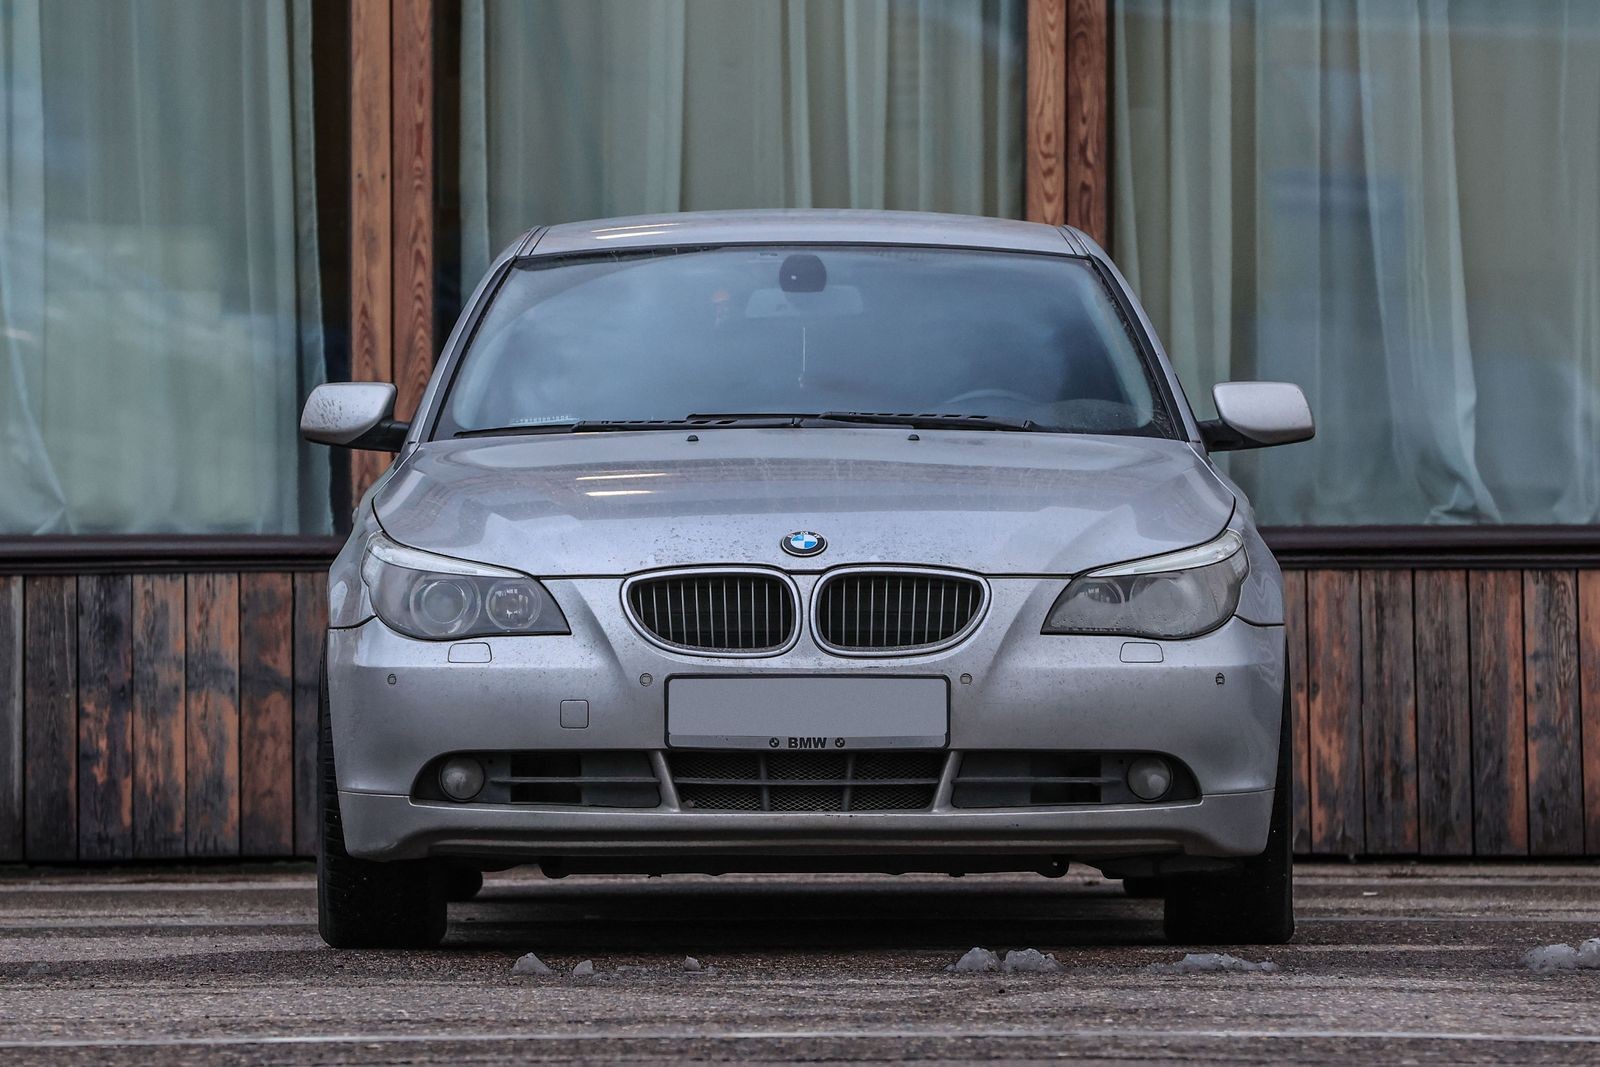 BMW 5 series V E60 с пробегом: сложный алюминиевый кузов, море электроники и пожароопасный «плюс»